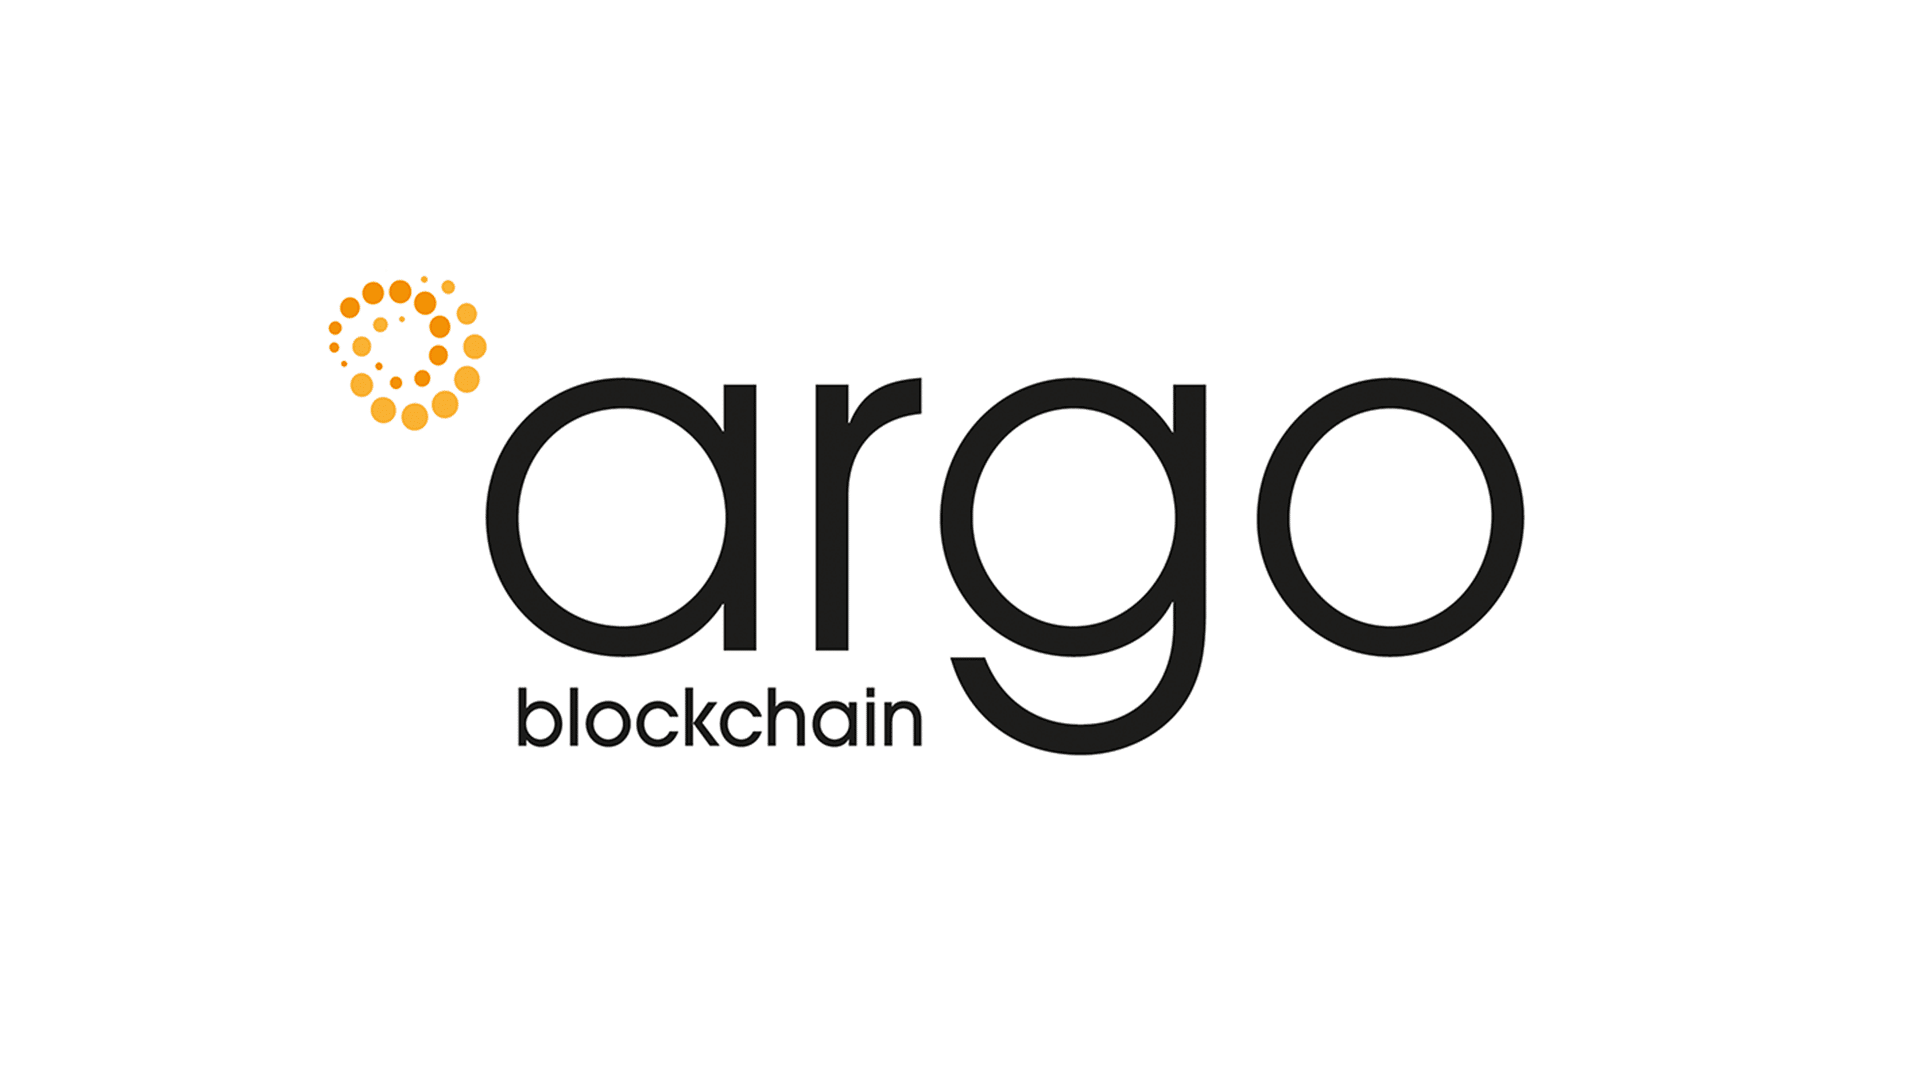 Argo Blockchainは、5月に25%少ないビットコインを採掘しました